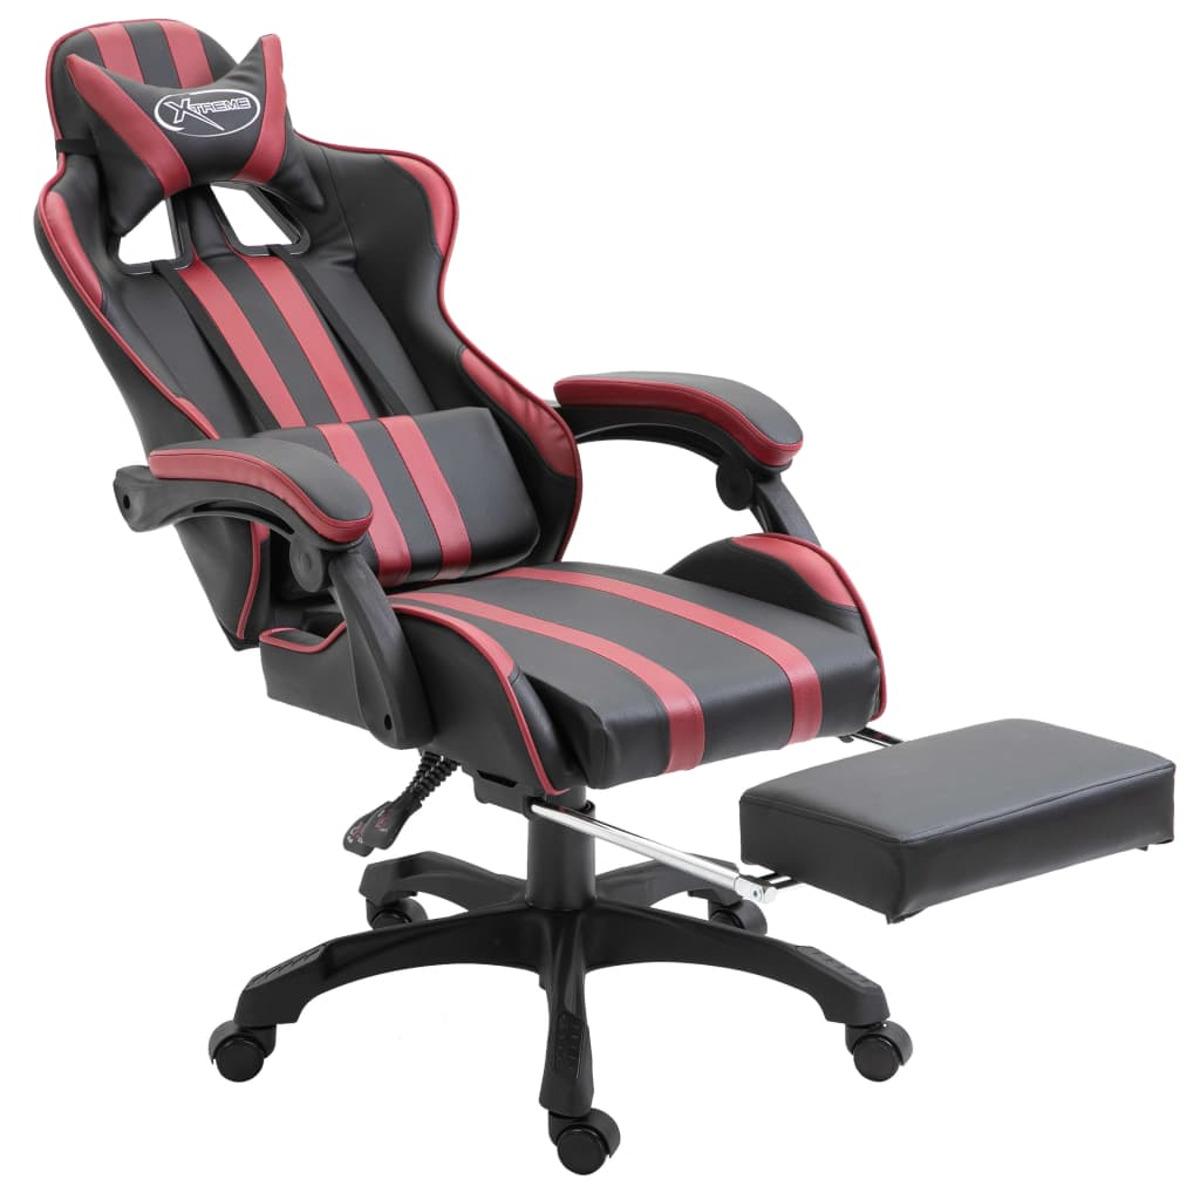 VIDAXL Rot 20223 Gaming Stuhl,